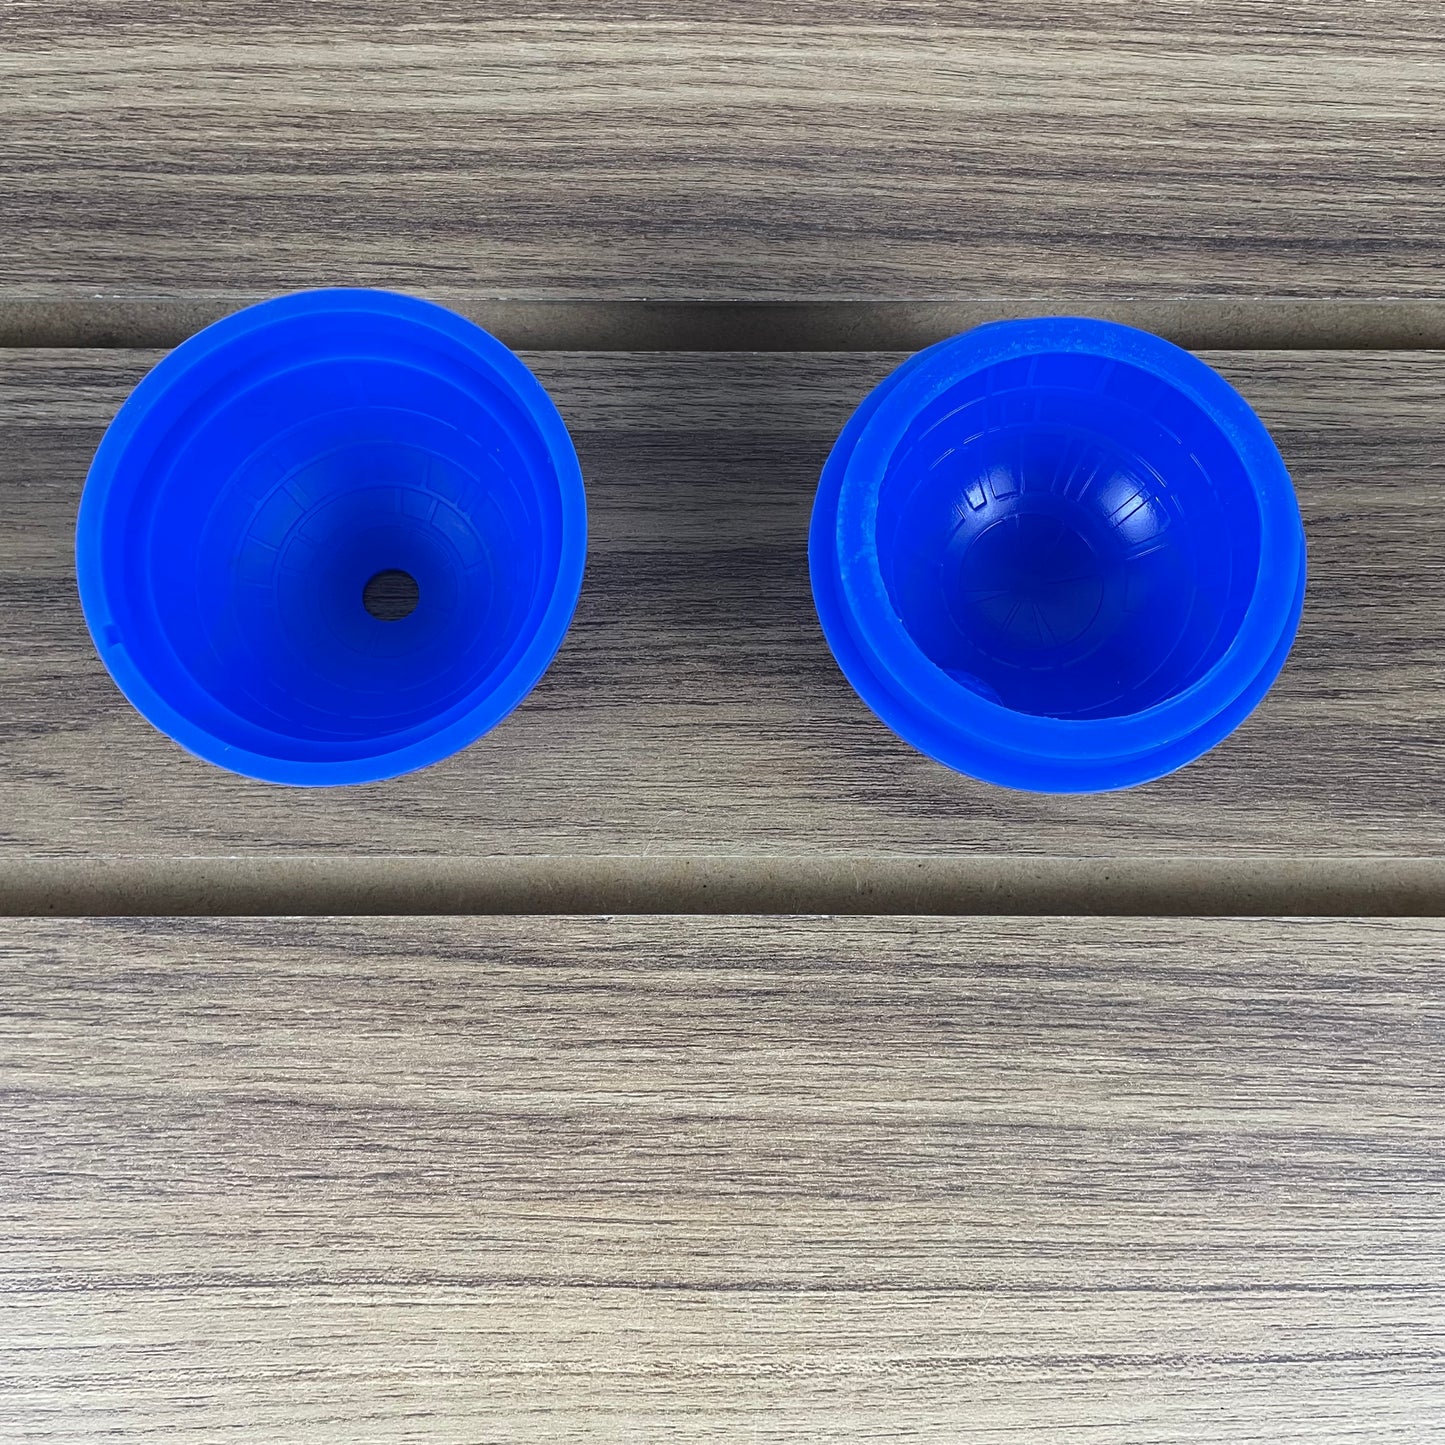 Mini forma azul para gelo de silicone